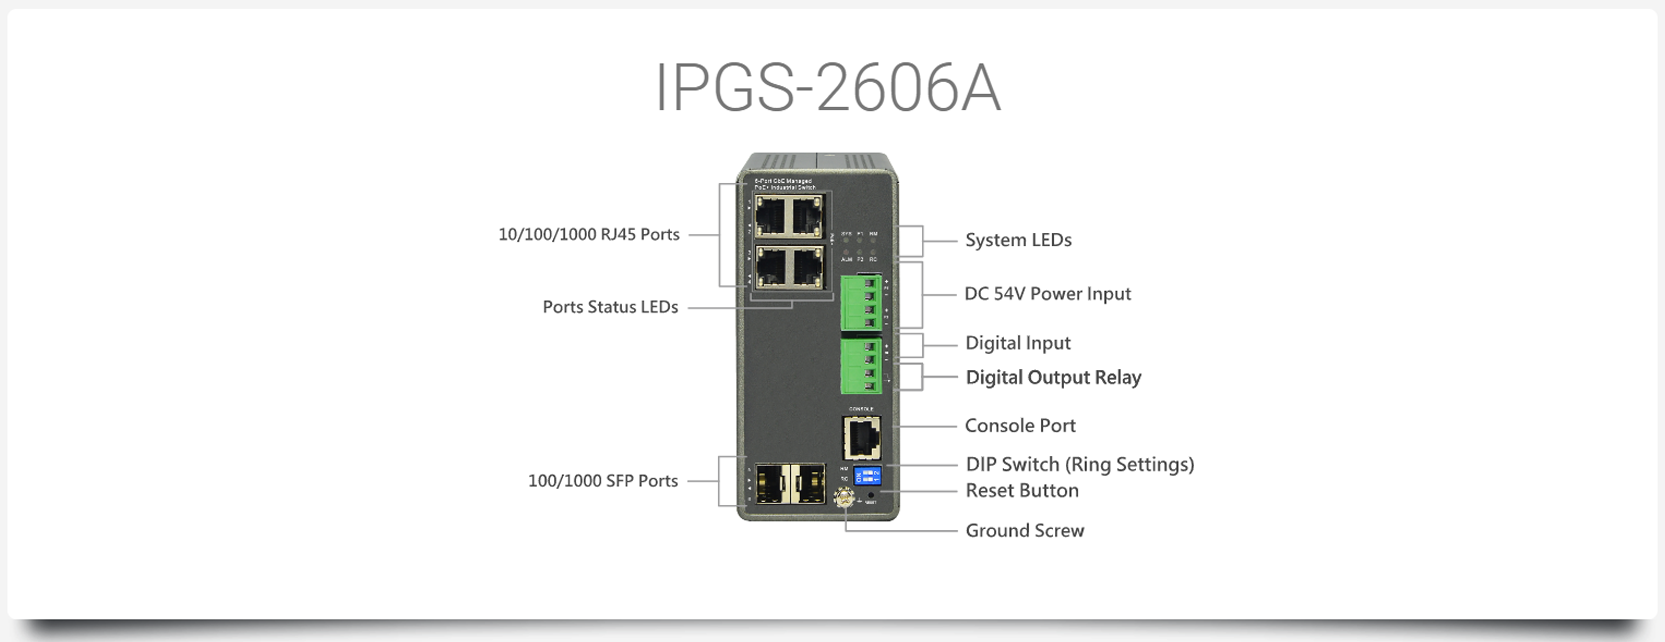 IPGS-2606A